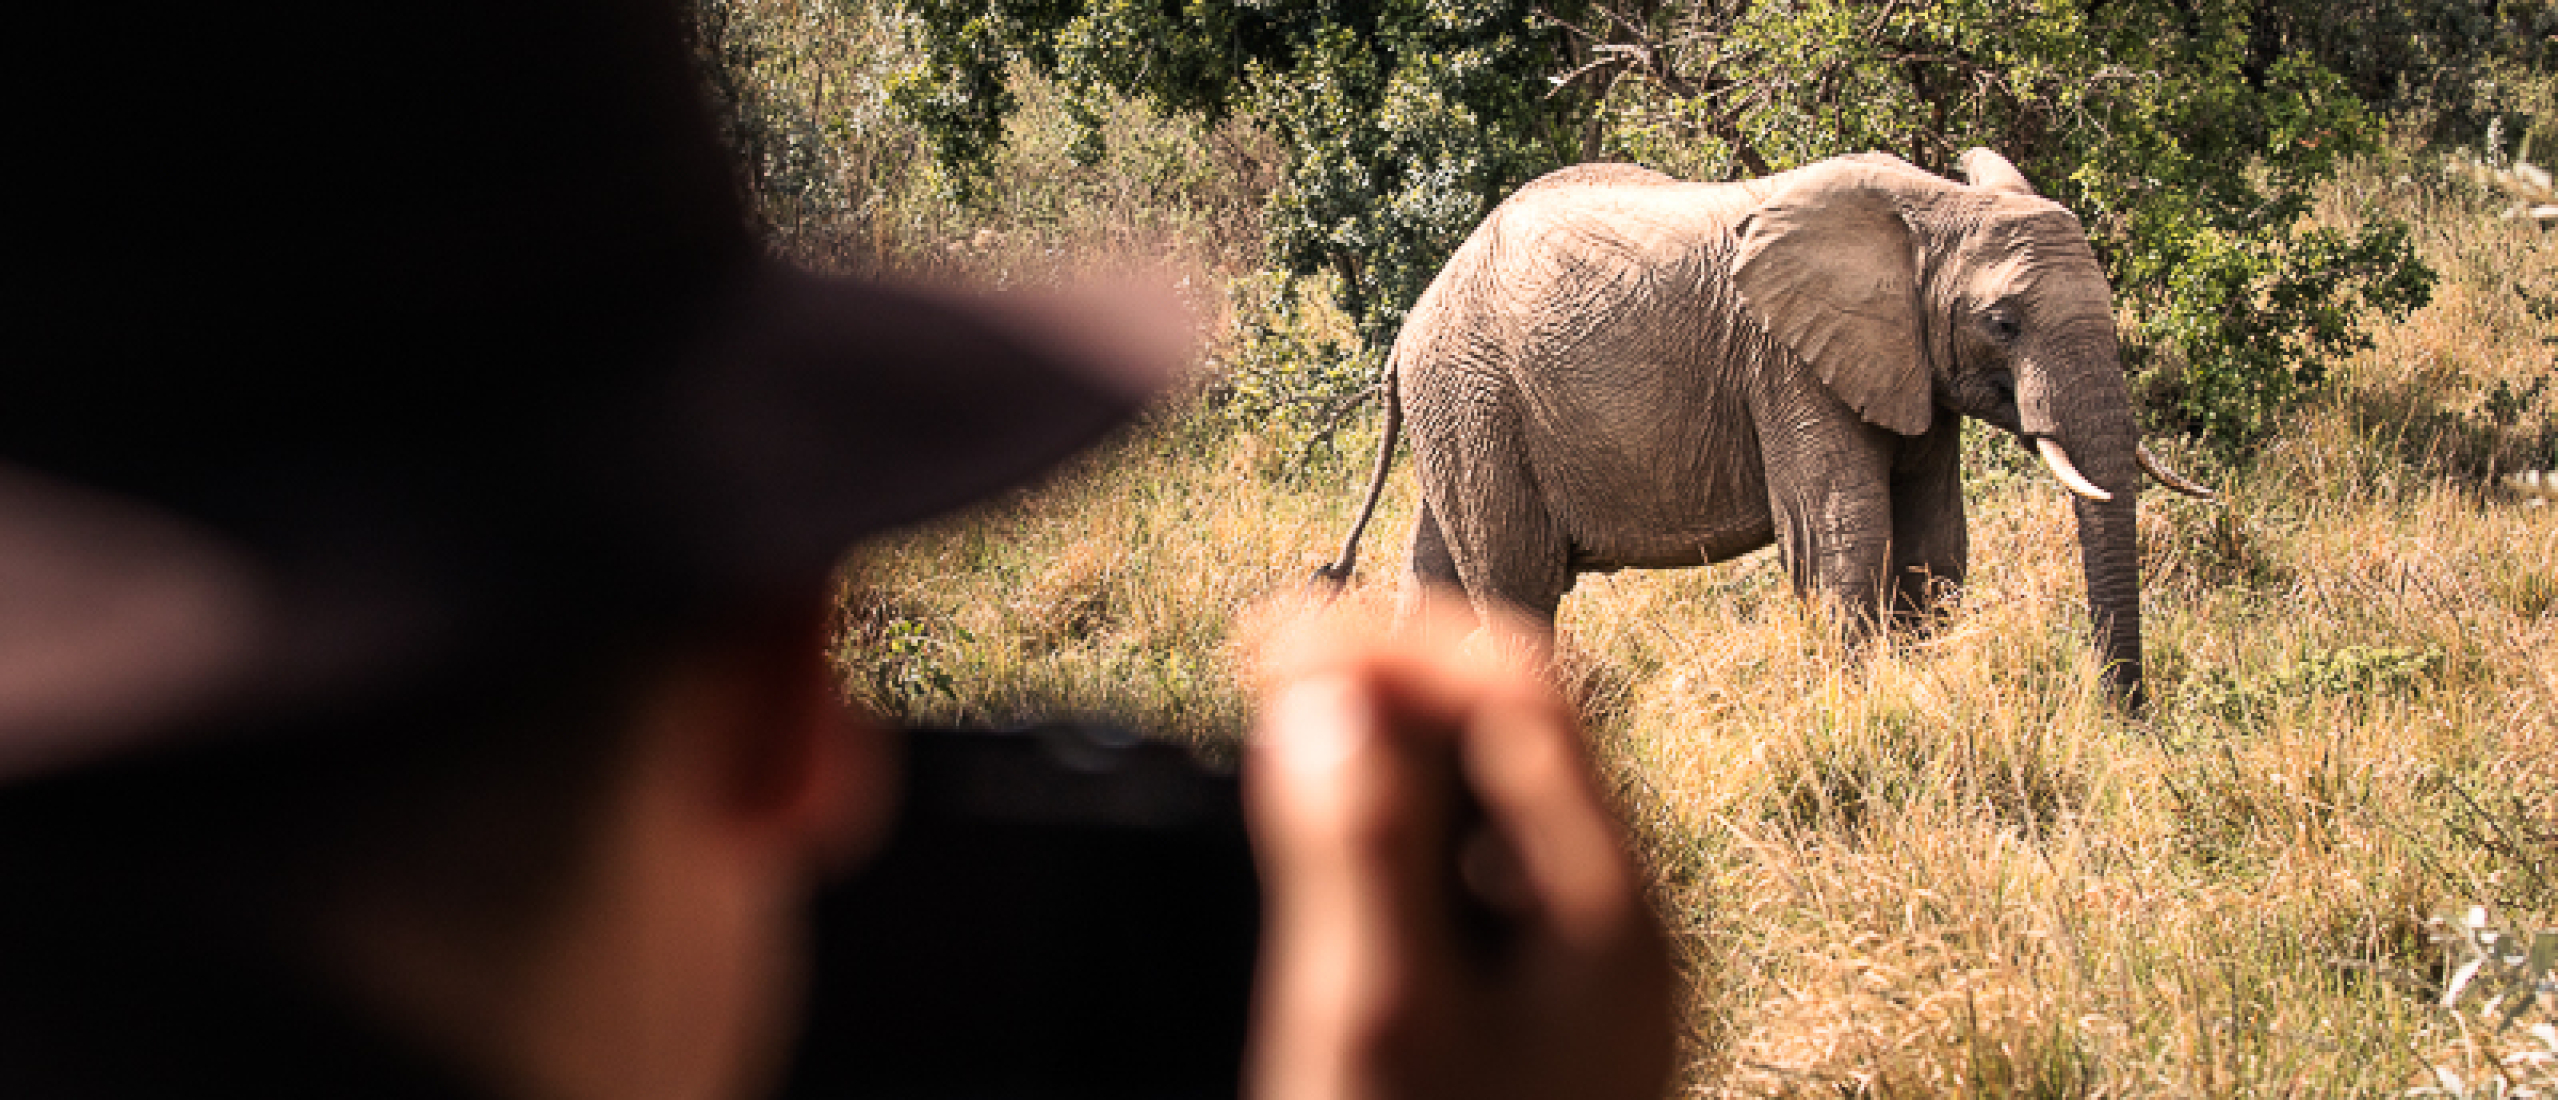 21 Safari Photography Tips for Capturing Stunning Safari Photos